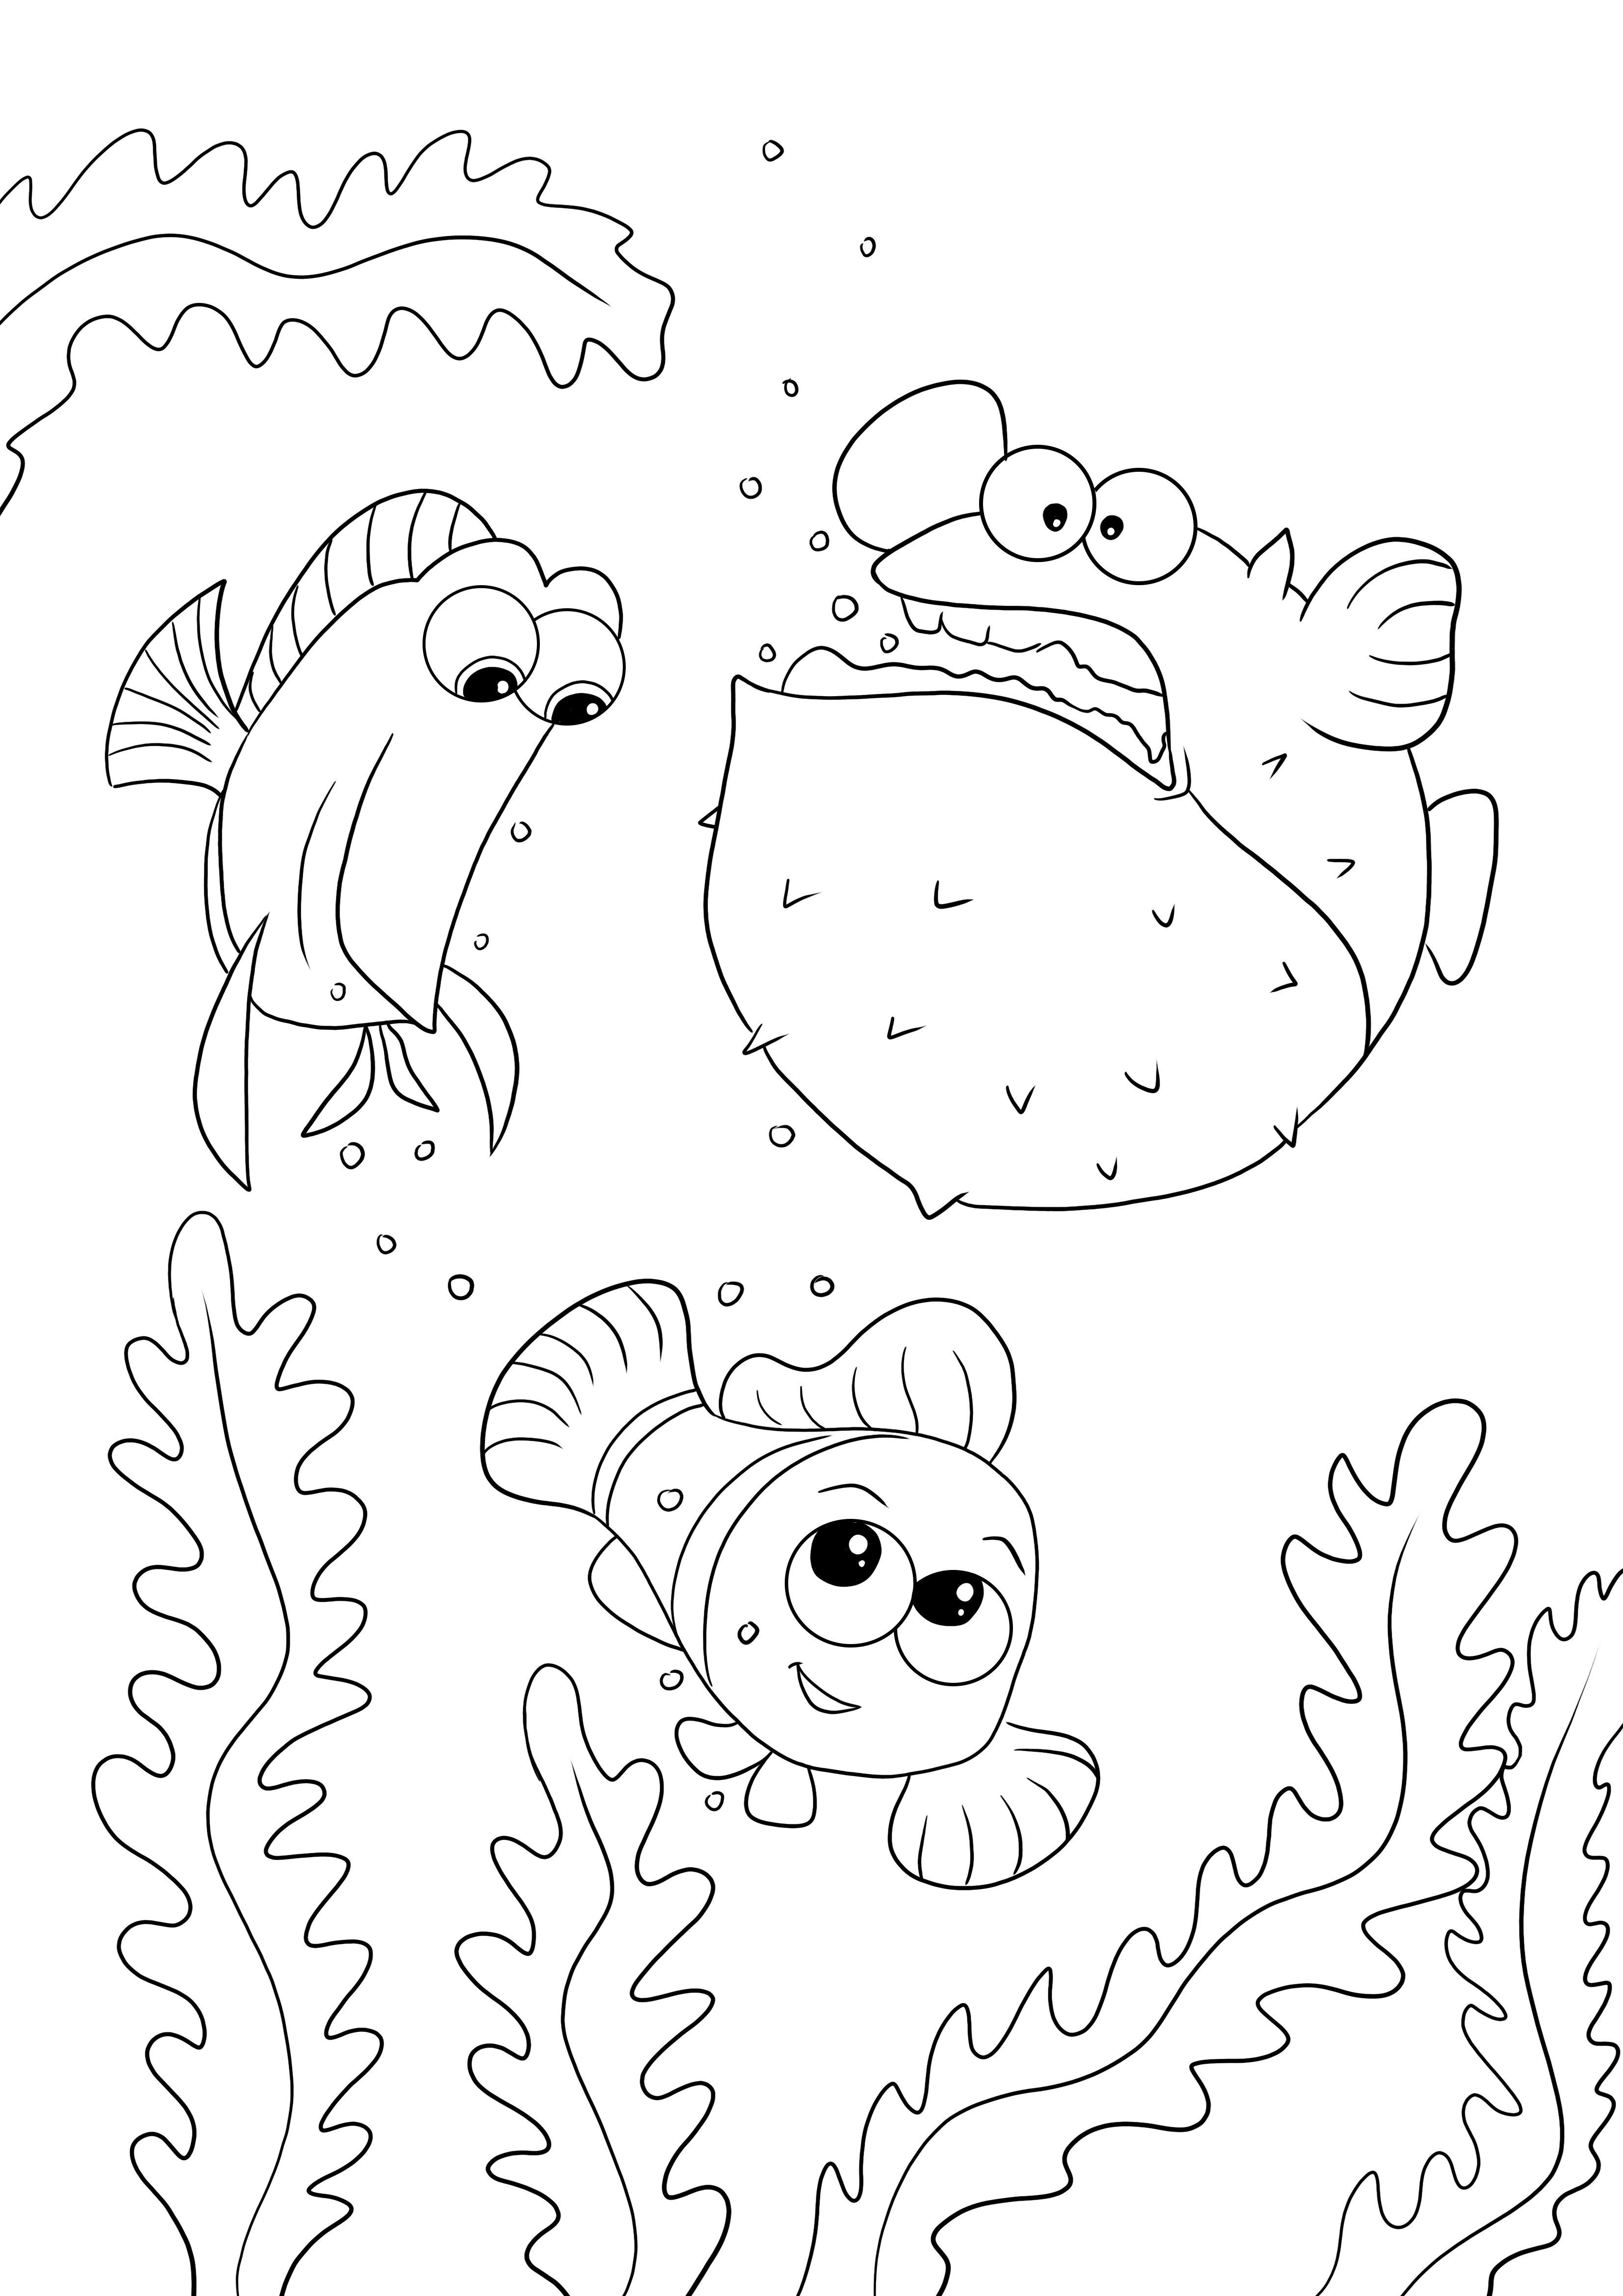 Her yaştan çocuklar için Tang Gang-Dory-Nemo resminin ücretsiz renklendirilmesi